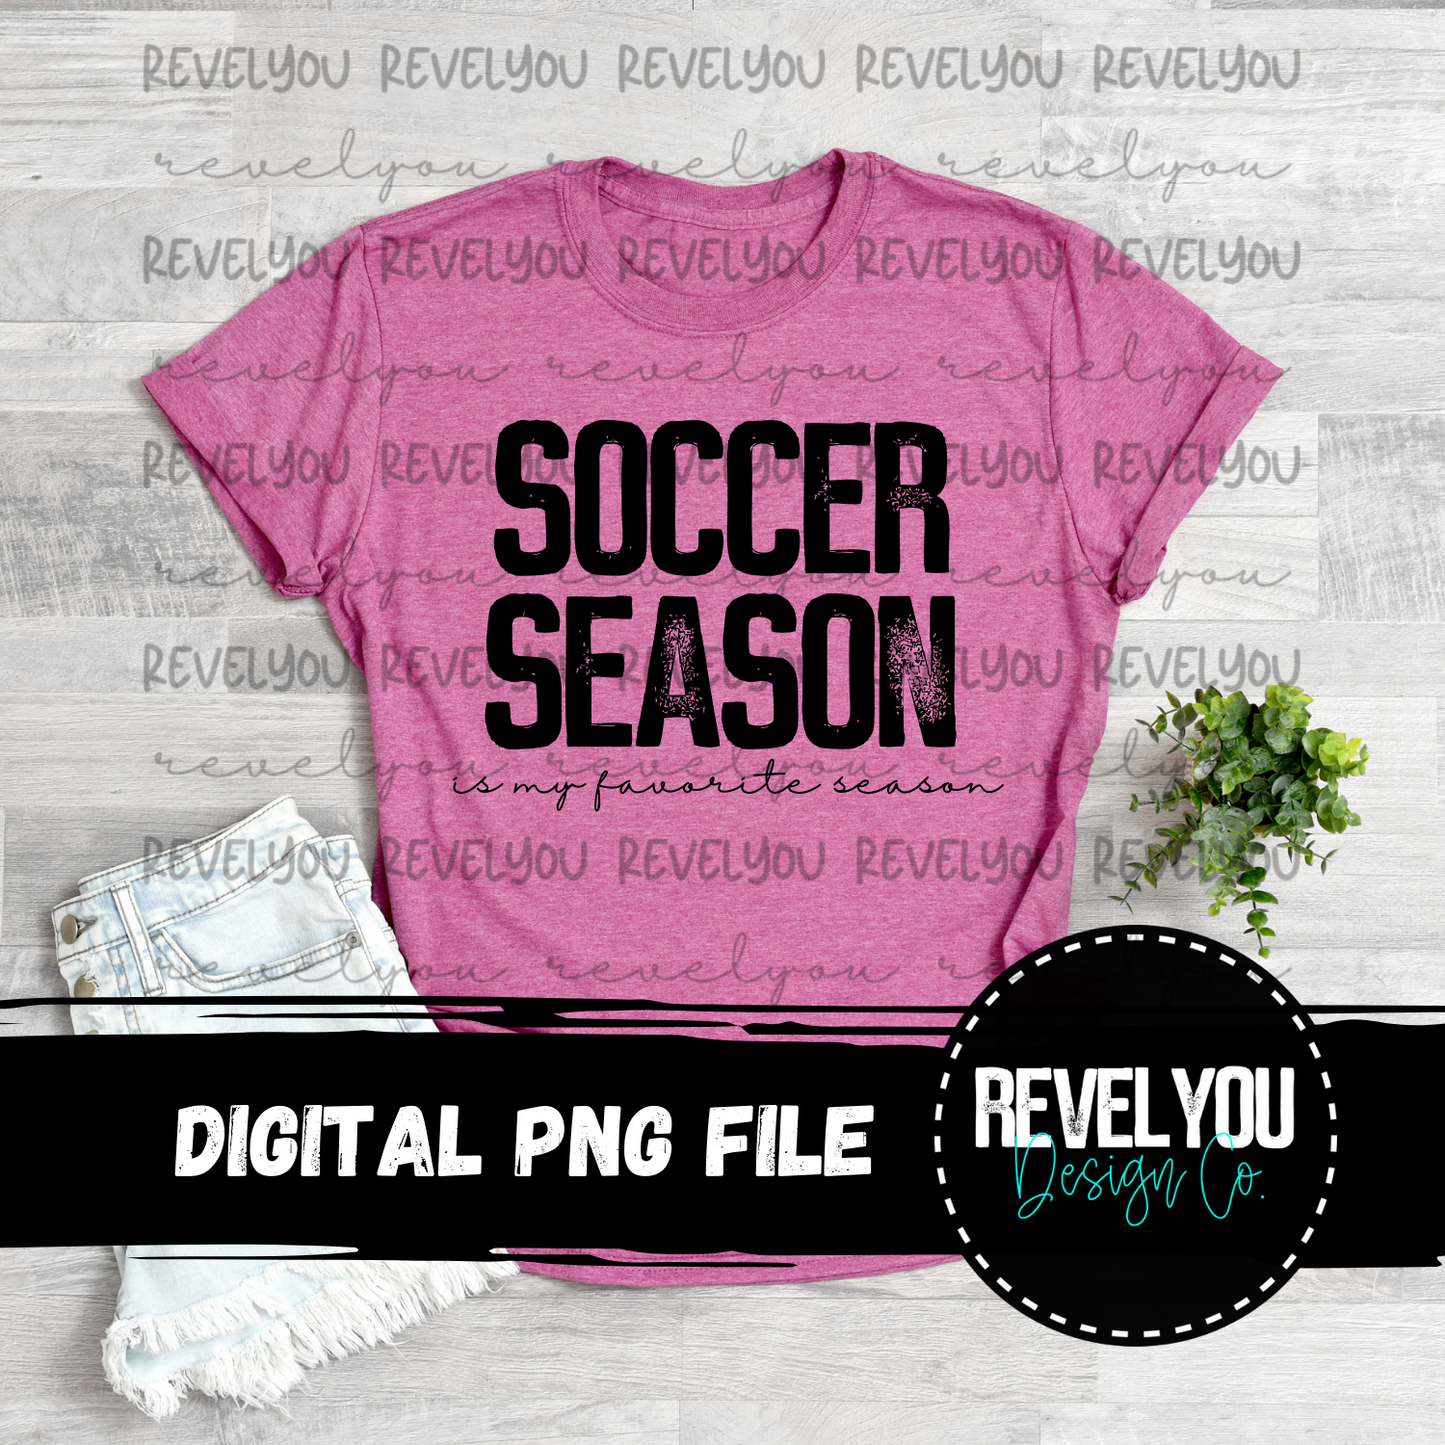 Soccer Digital Bundle - PNG